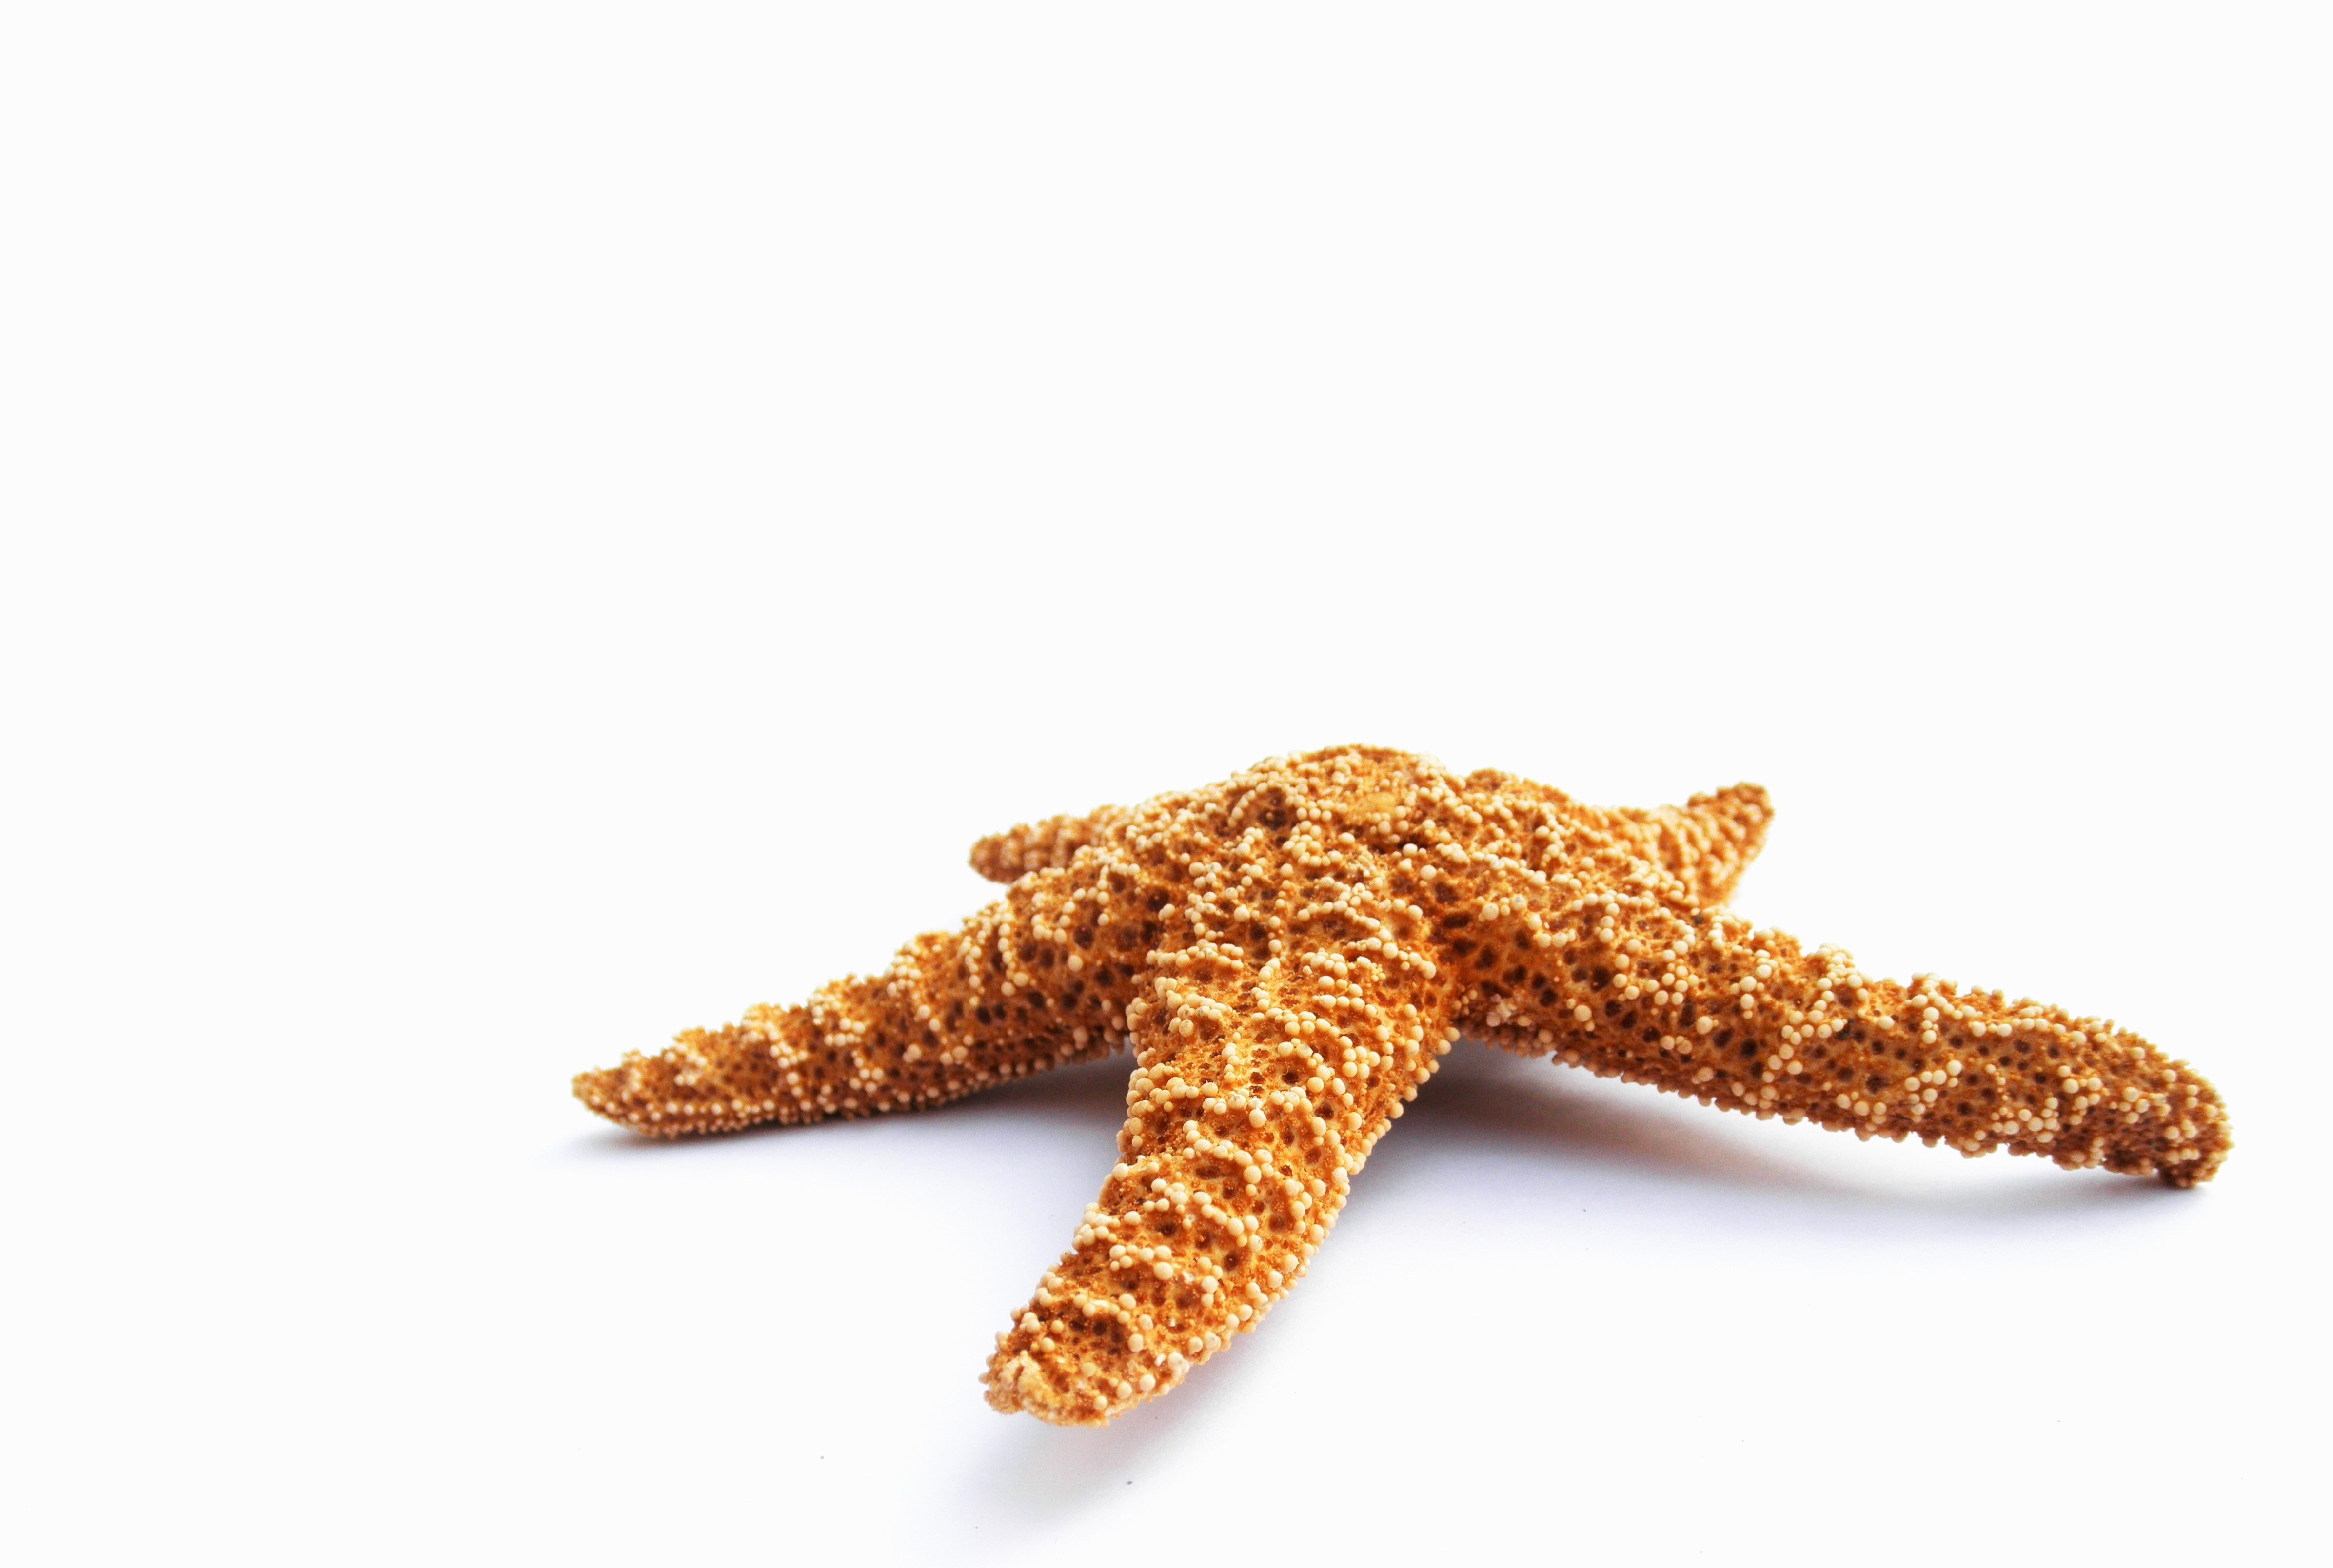 brown and white starfish